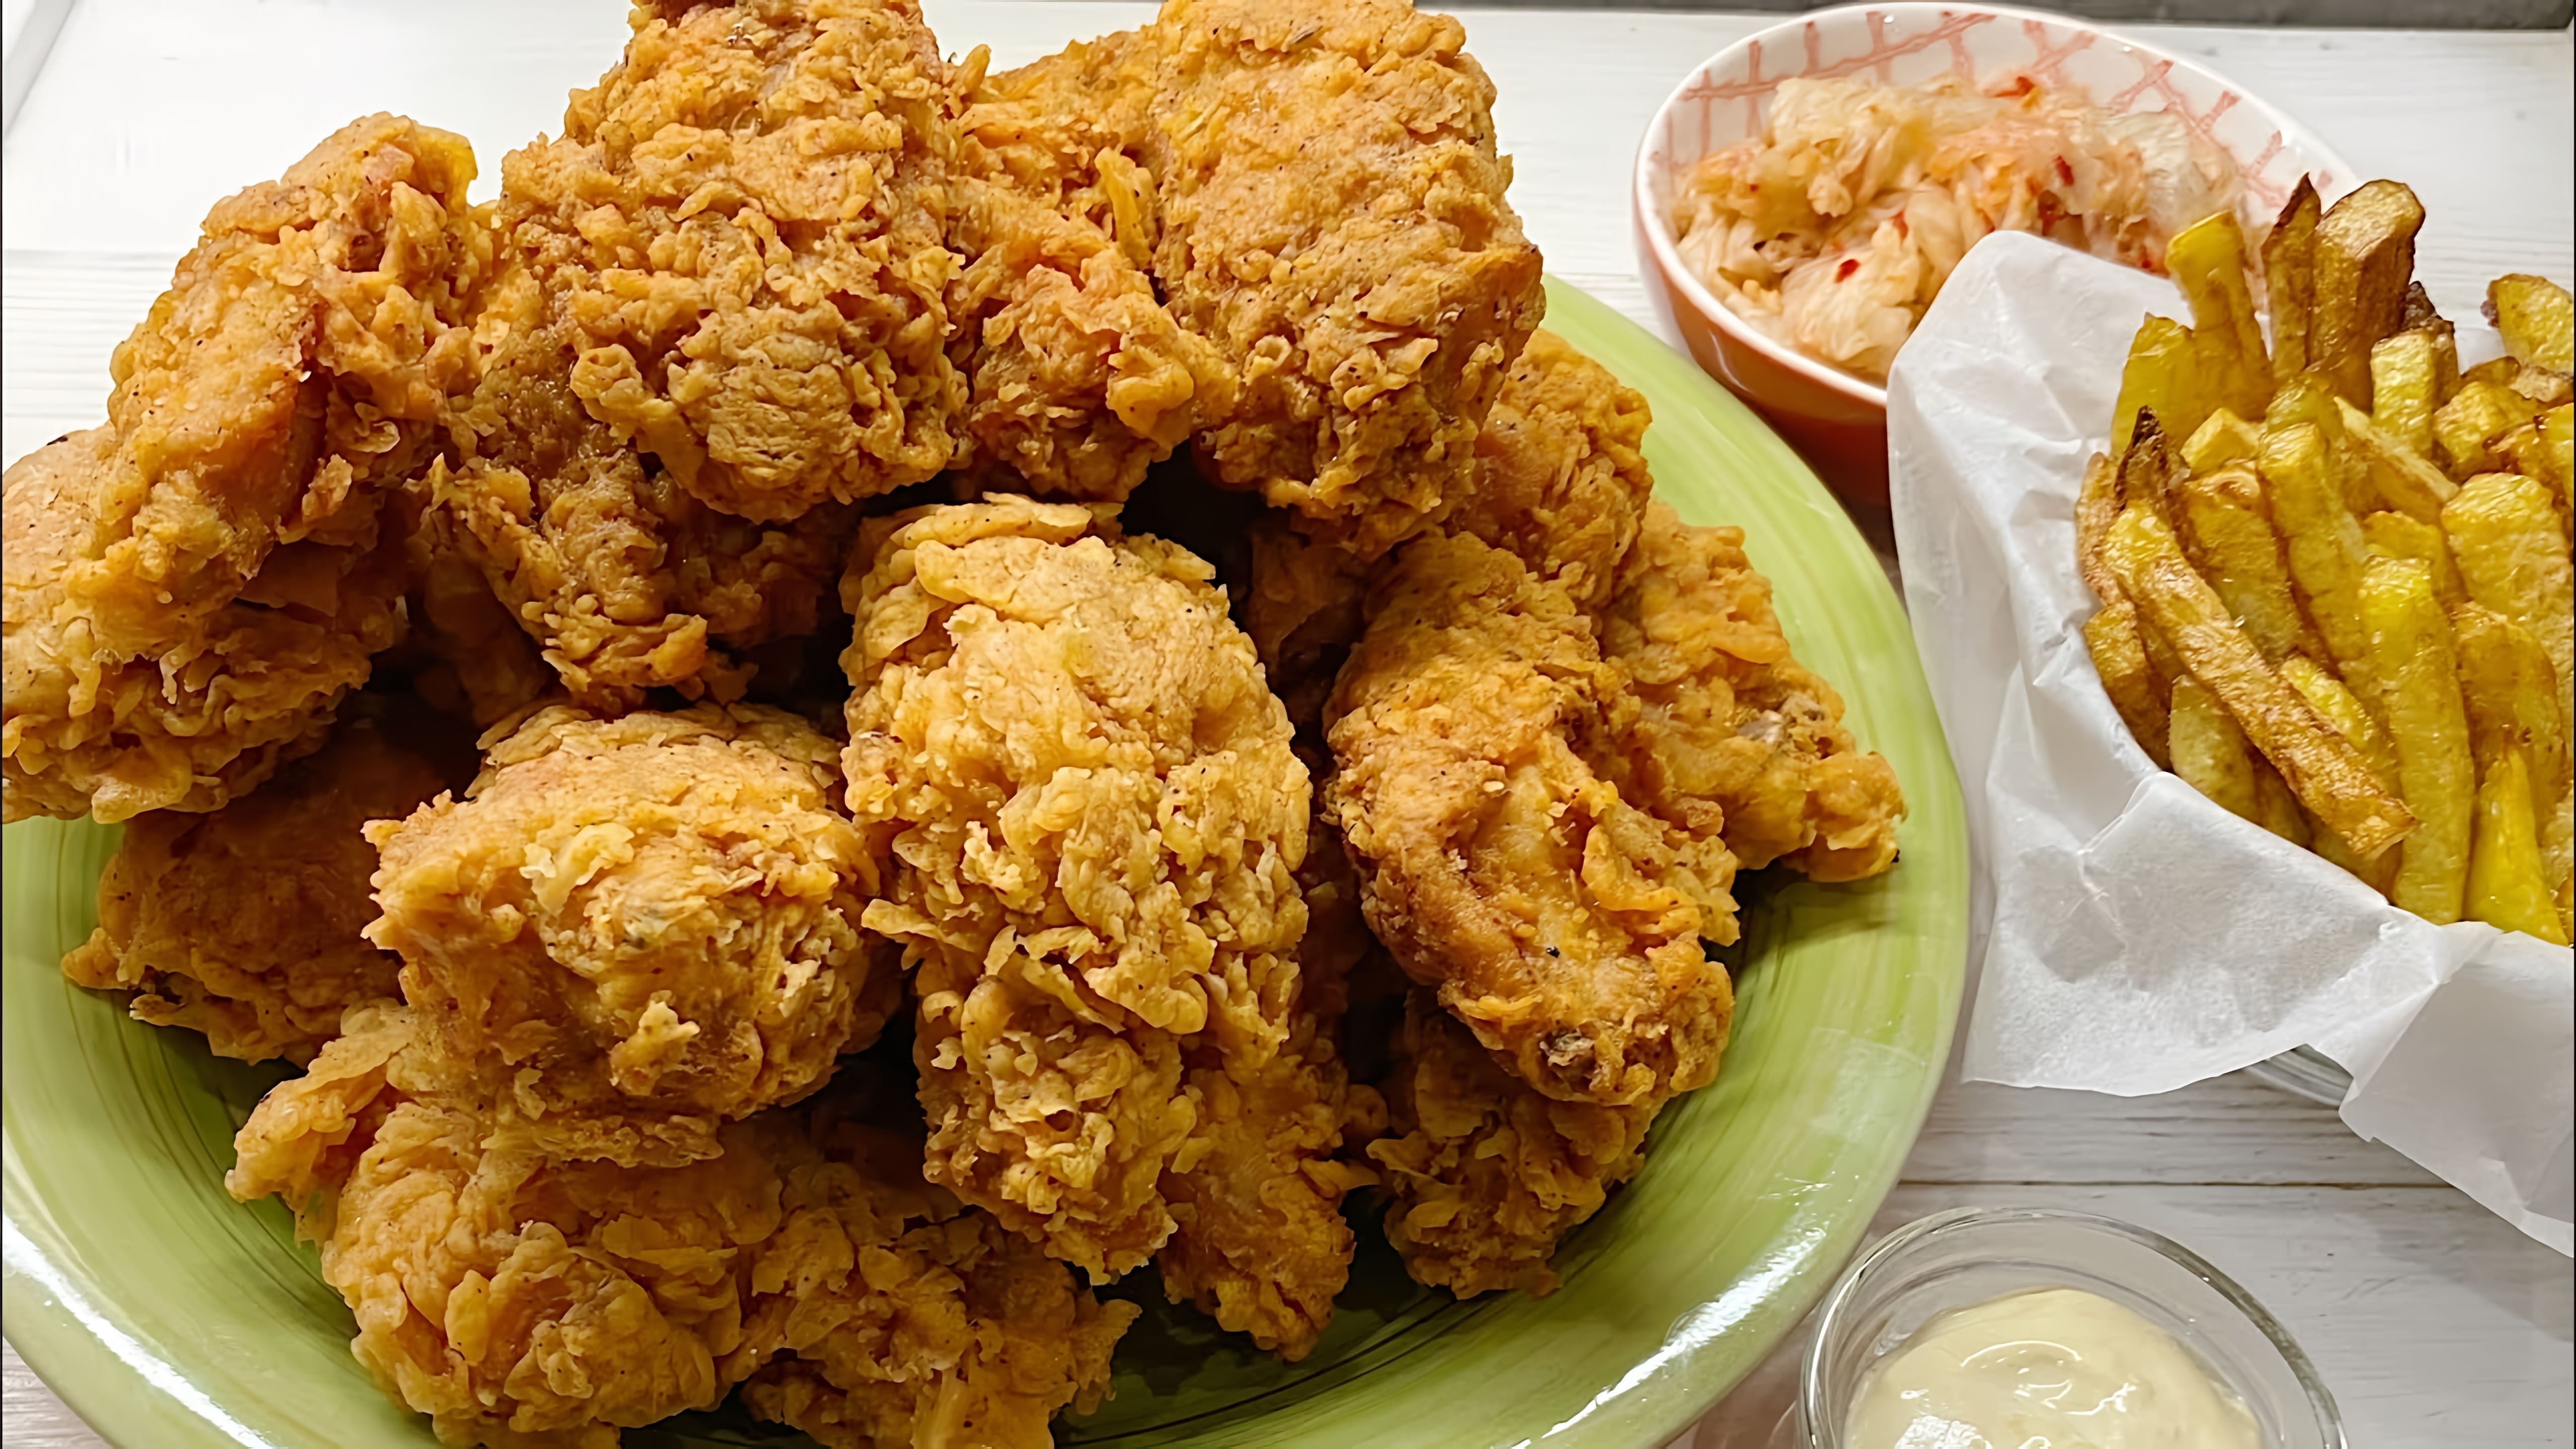 В этом видео демонстрируется рецепт приготовления фрайд чикен, куриных крыльев, как в KFC